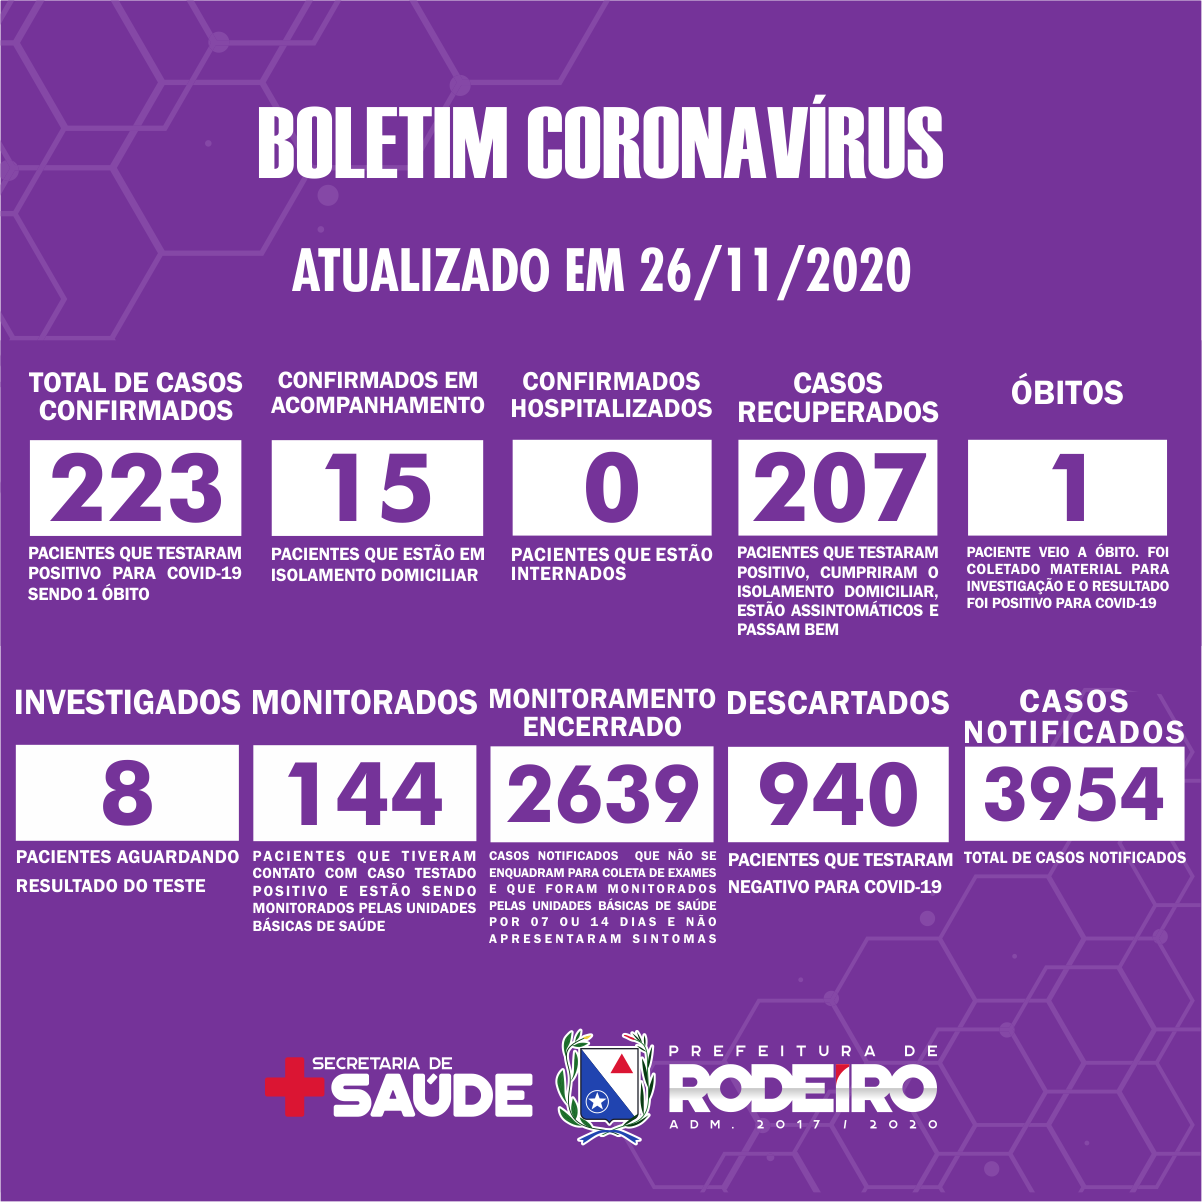 Boletim Epidemiológico do Município de Rodeiro sobre coronavírus, atualizado em 26/11/2020